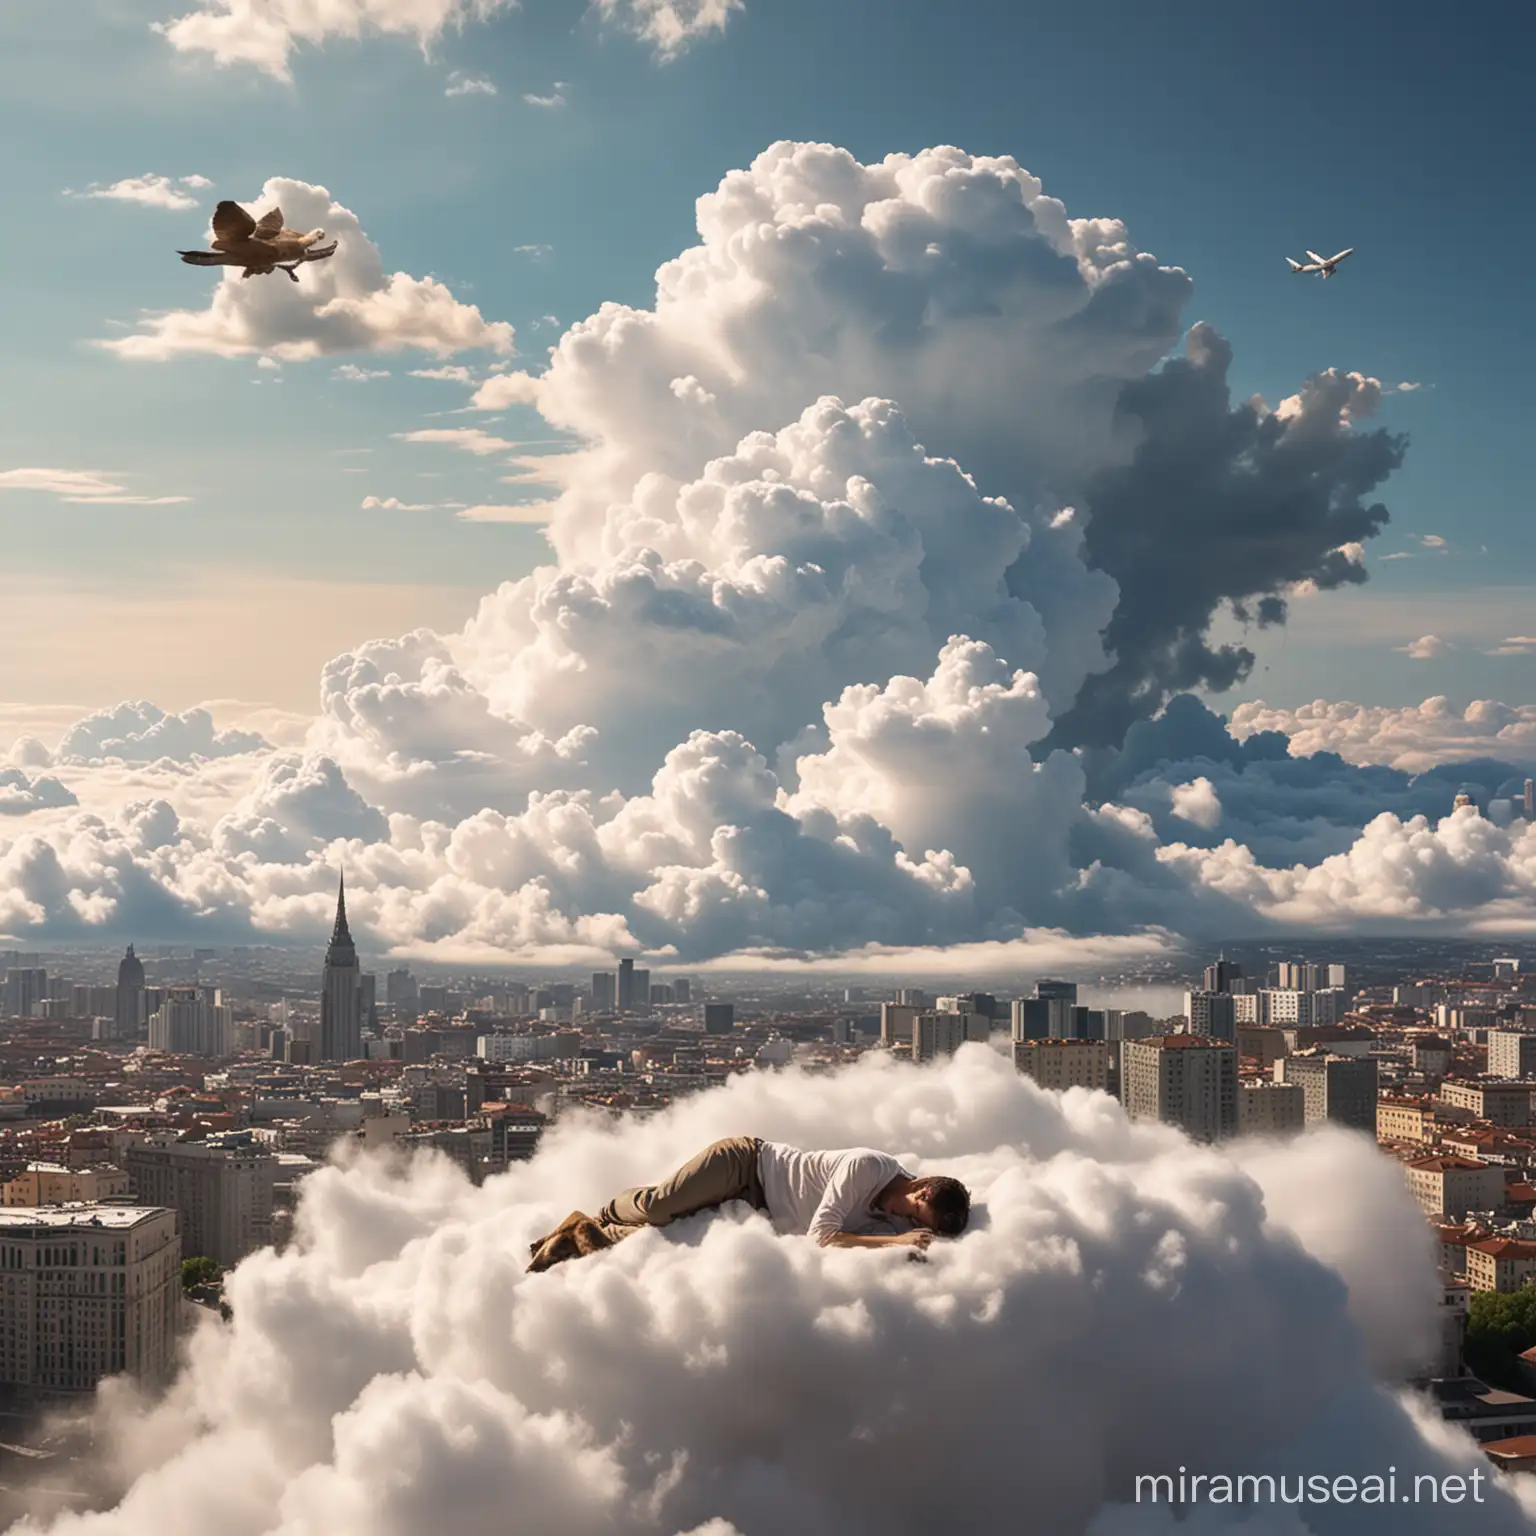 человек спит на облаке ,облоко летит над городом,рядом собака